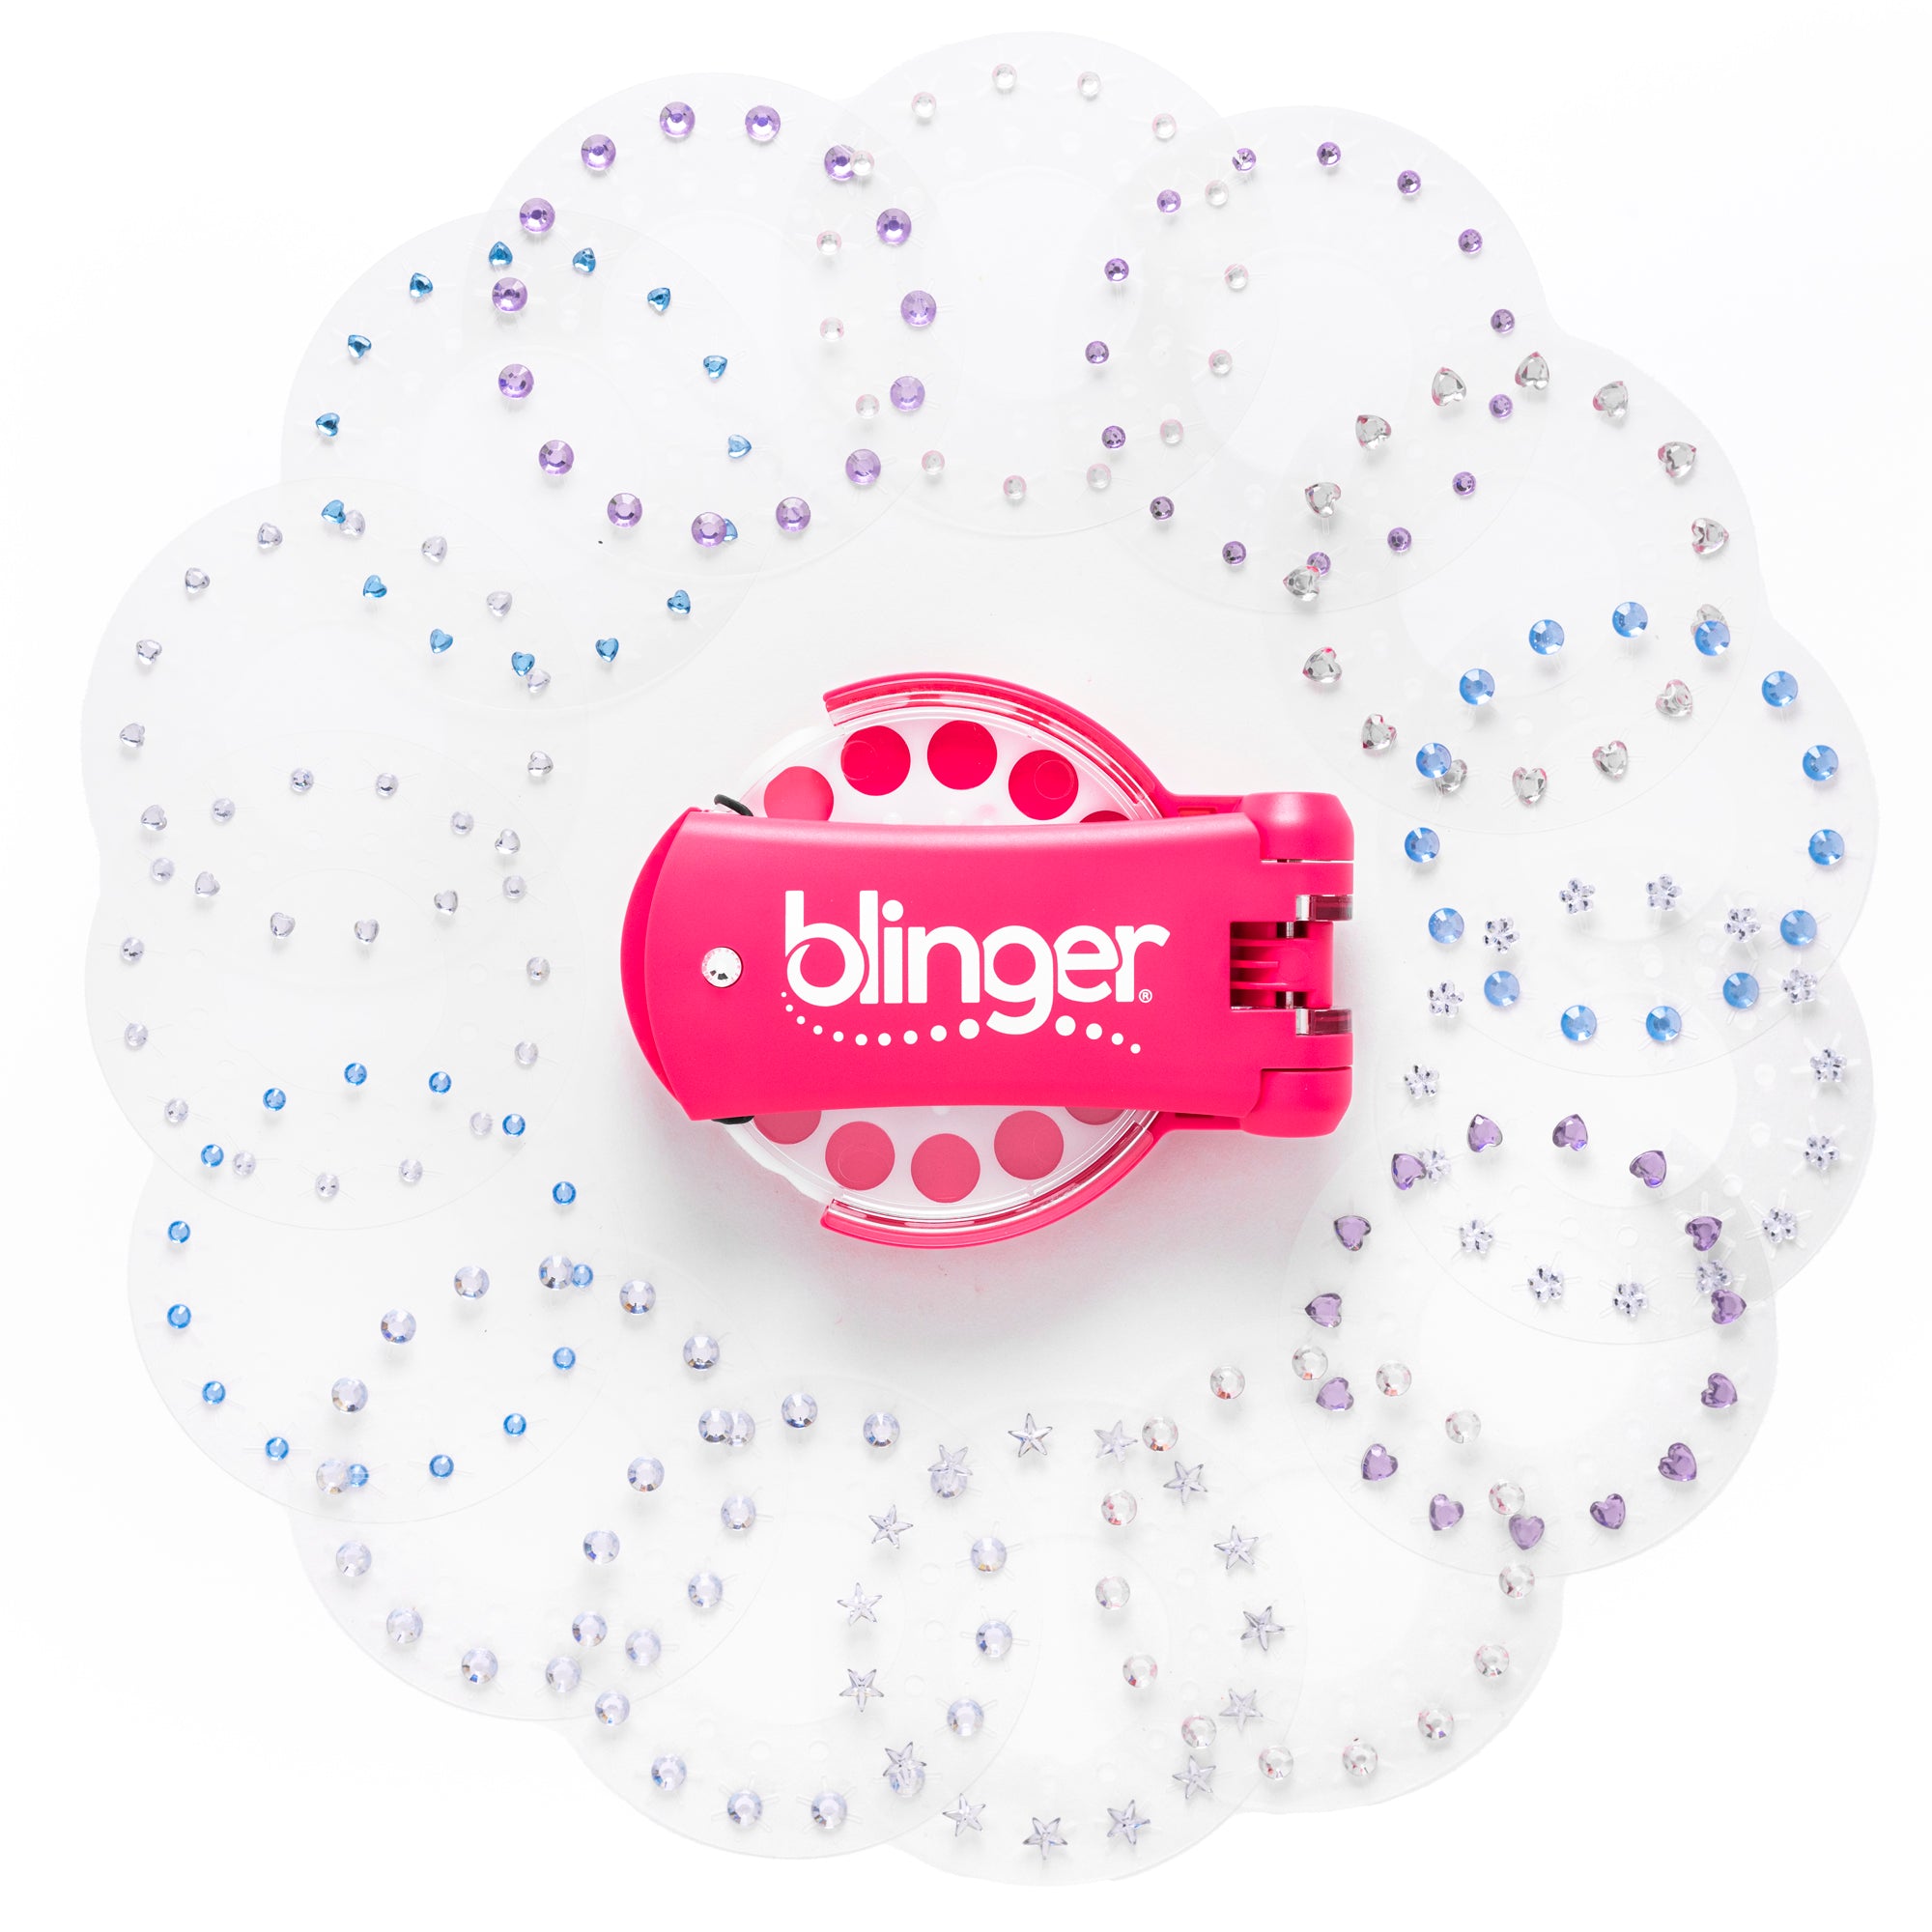 blinger® Glam Collection Starter Kit with blinger® Gem Stamper + 225 Colorful Acrylic Gems